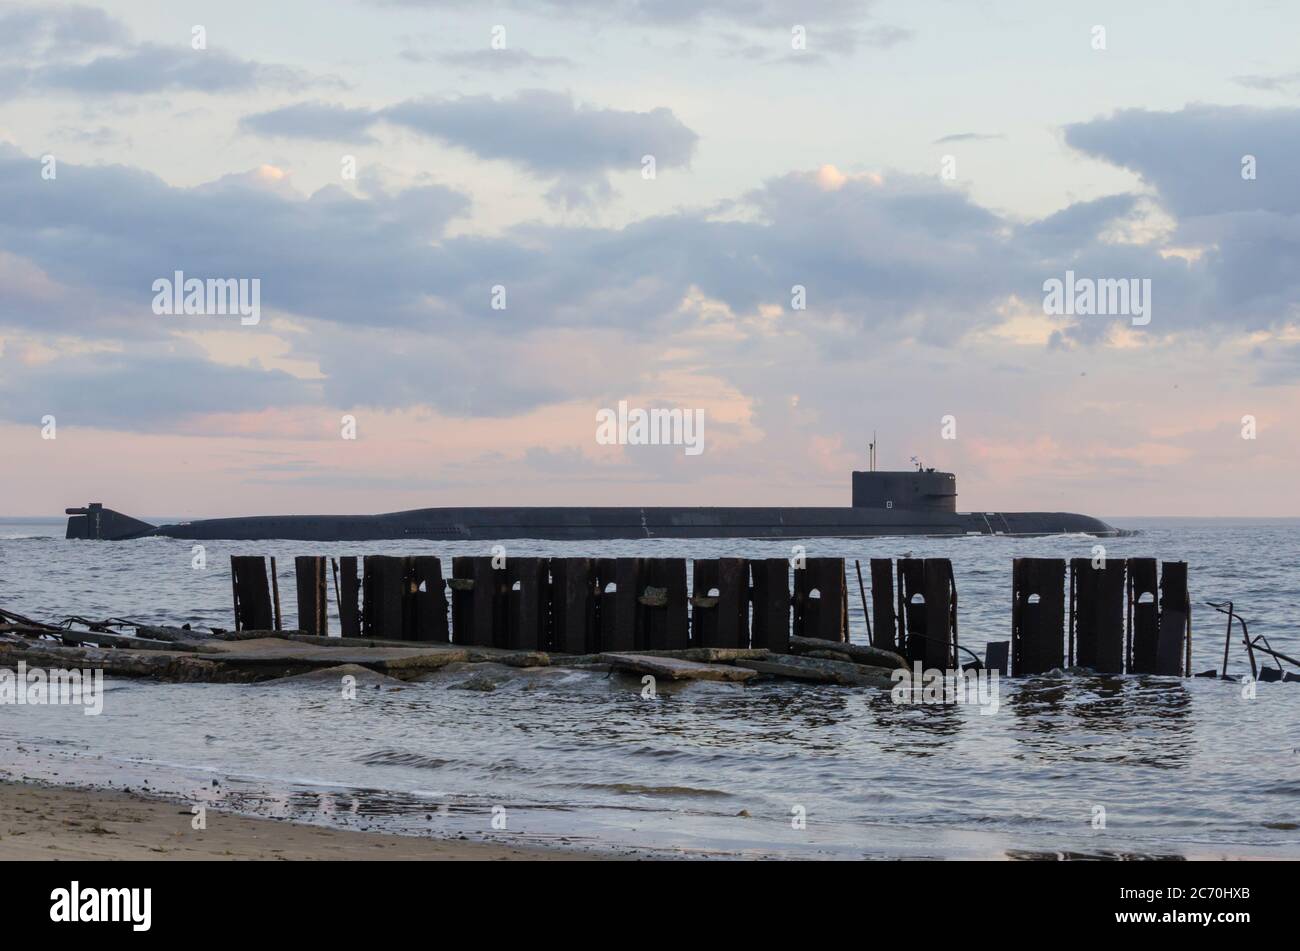 Luglio, 2020 - sottomarino nucleare russo. Flotta russa del Nord. Russia, Mar Bianco Foto Stock